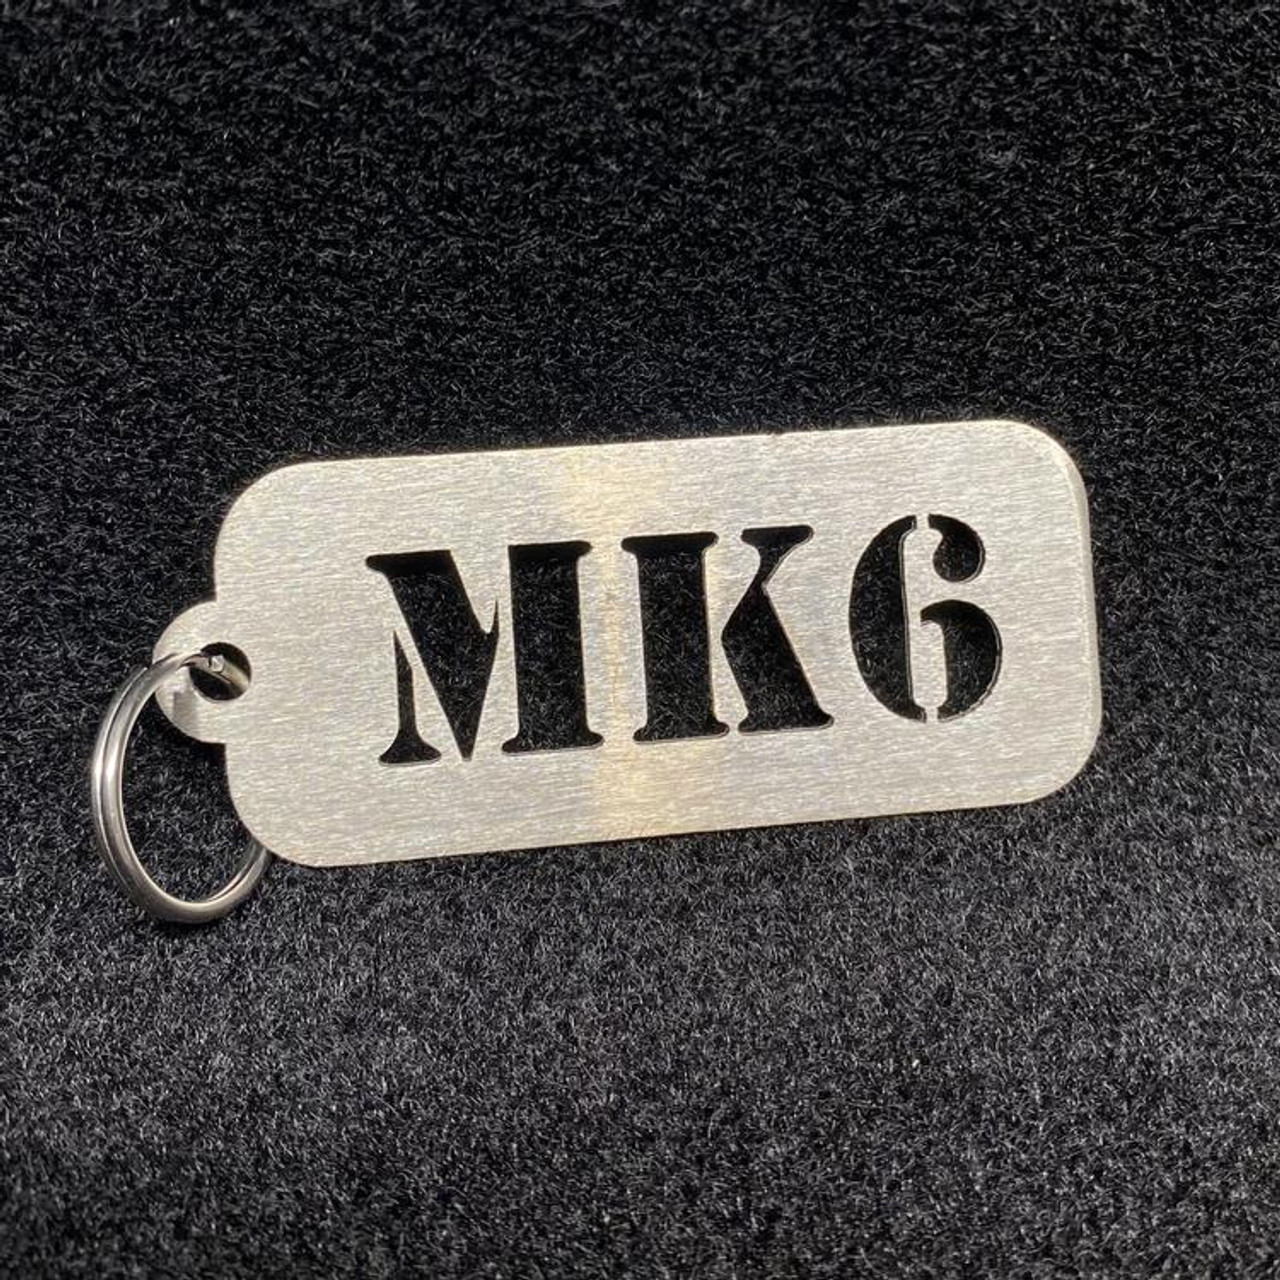 CJM Industries MK1-8 Stainless Steel Keychains